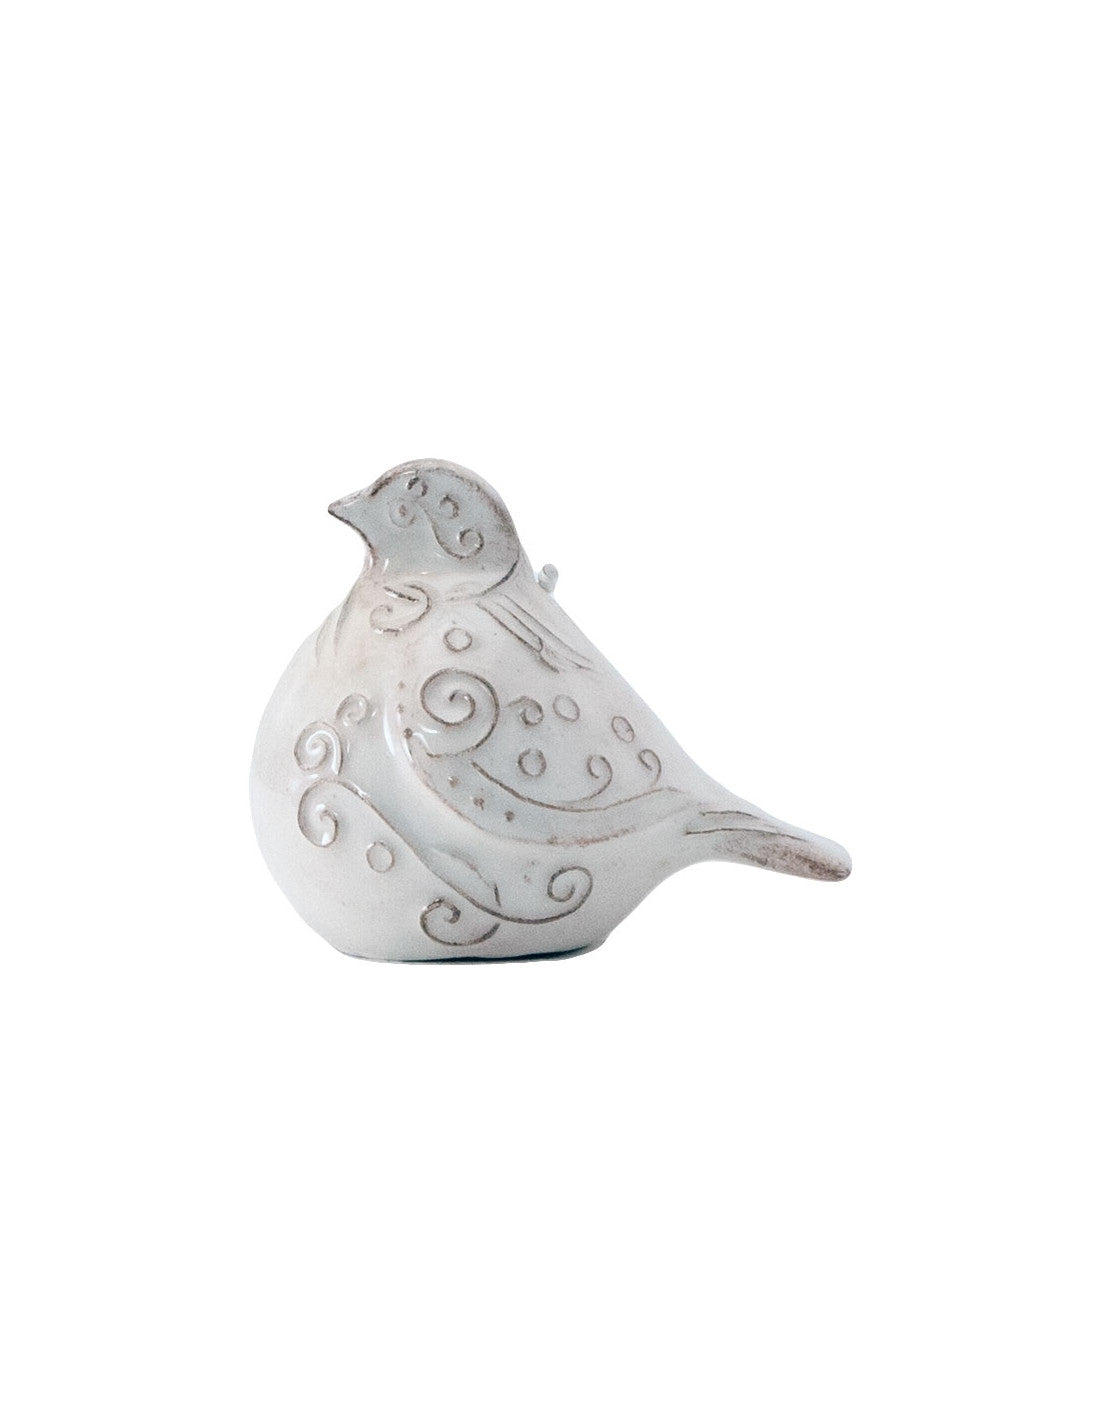 Bird-shaped ceramic bell